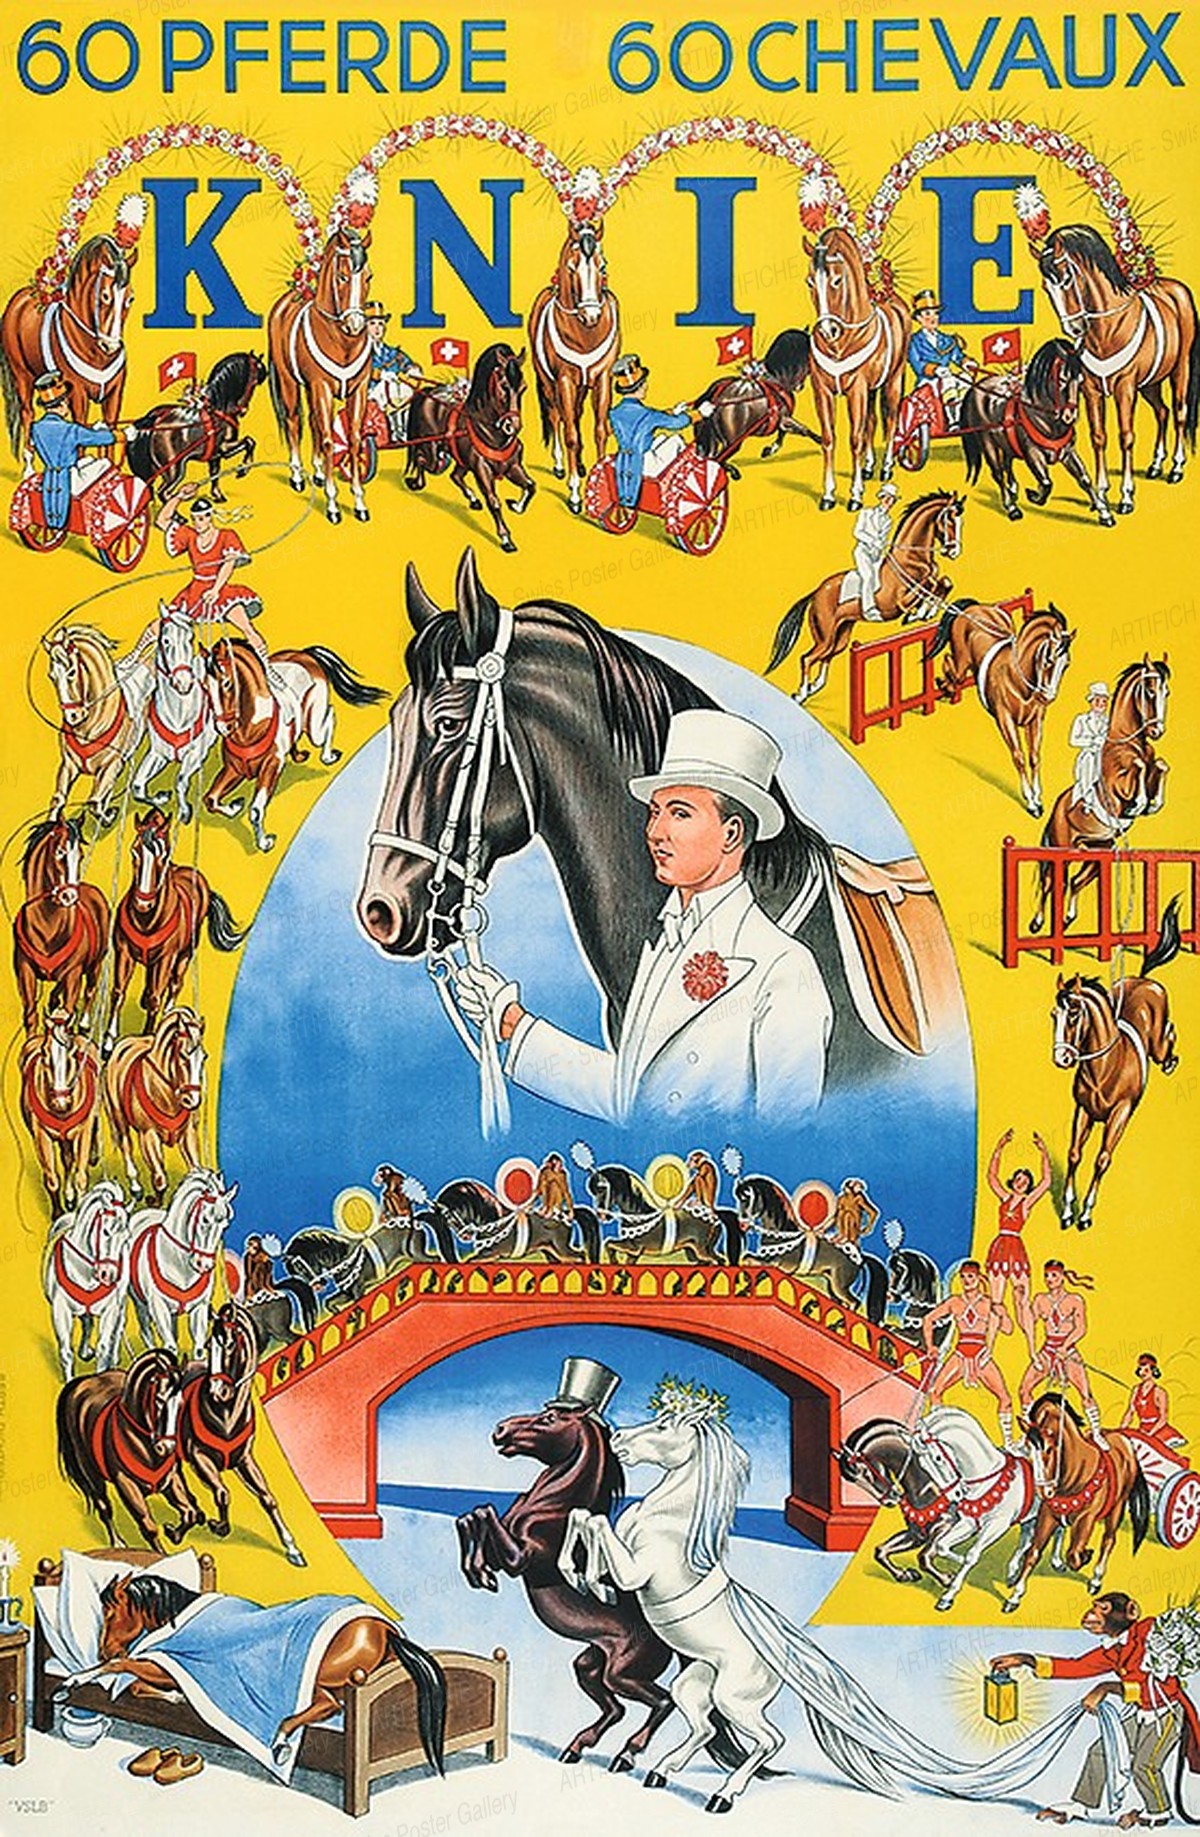 KNIE 60 Pferde 60 Chevaux, Berthold Richter